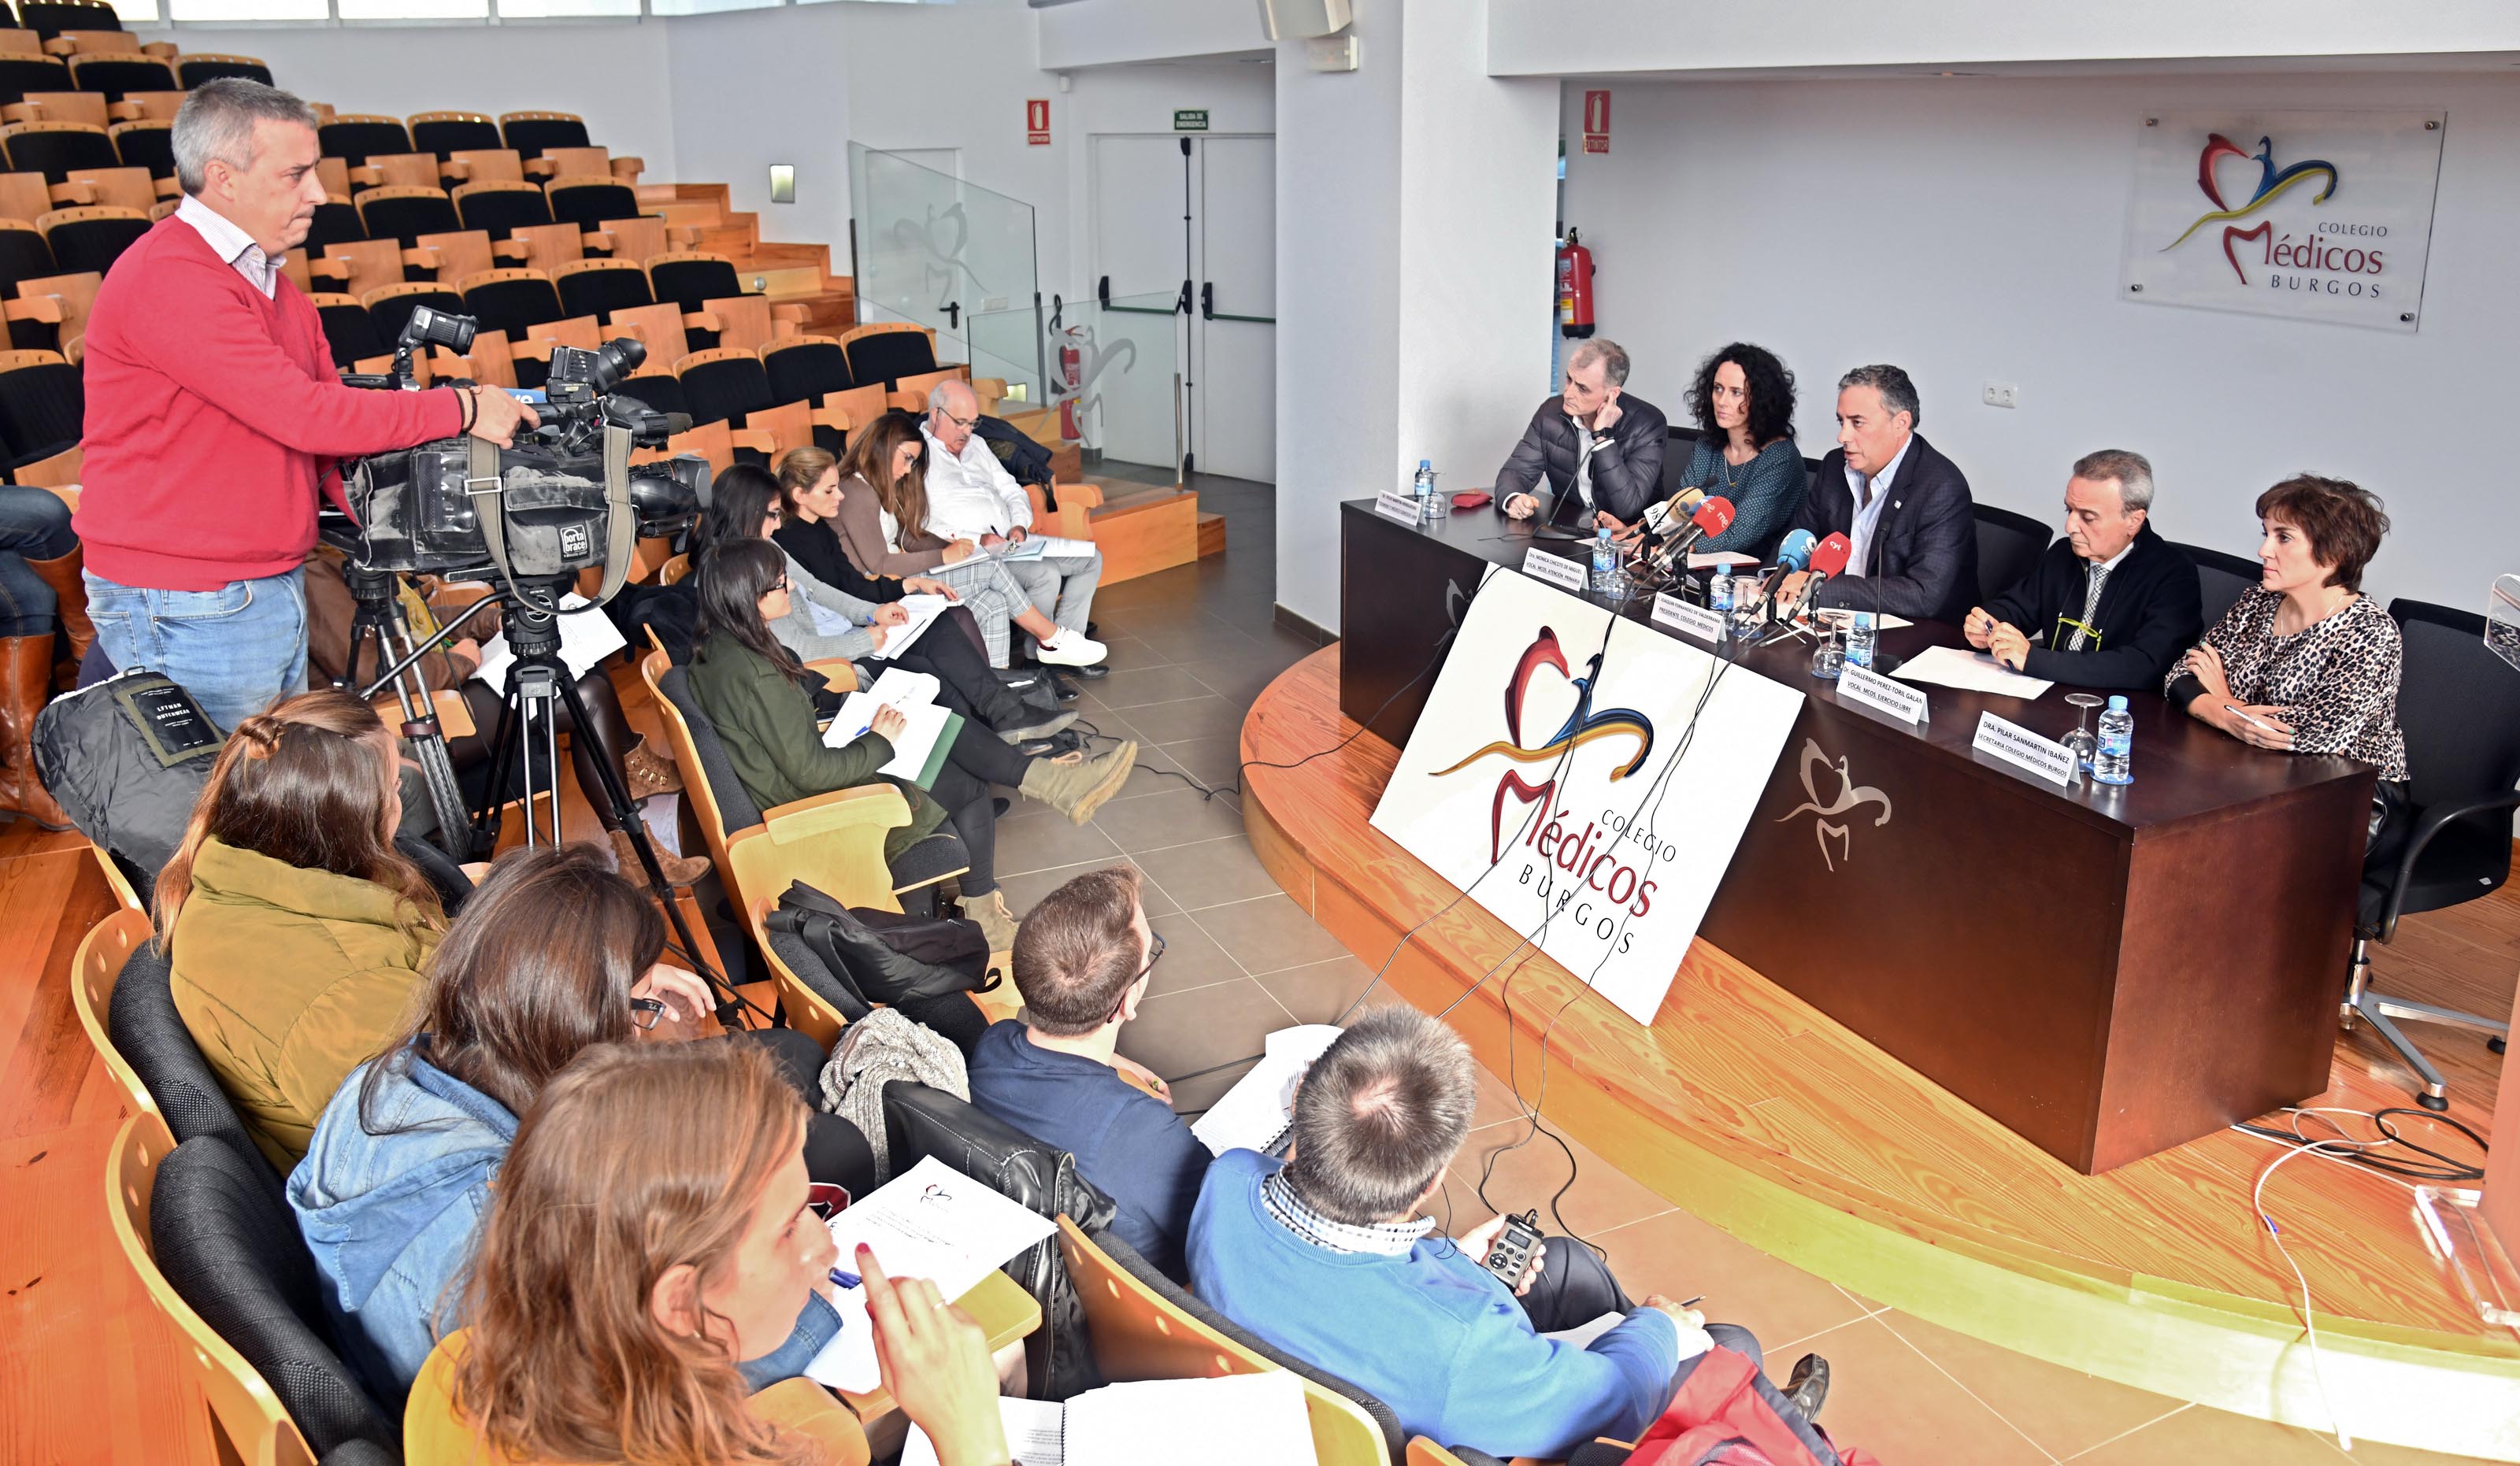 El salón de actos del Colegio de Médicos de Burgos acogió hoy martes, 23 de octubre, una rueda de prensa en la que Fernández de Valderrama, acompañado de parte de miembros de la Junta Directiva, analizaron la situación actual de la sanidad en sus diferentes ámbitos y su problemática.